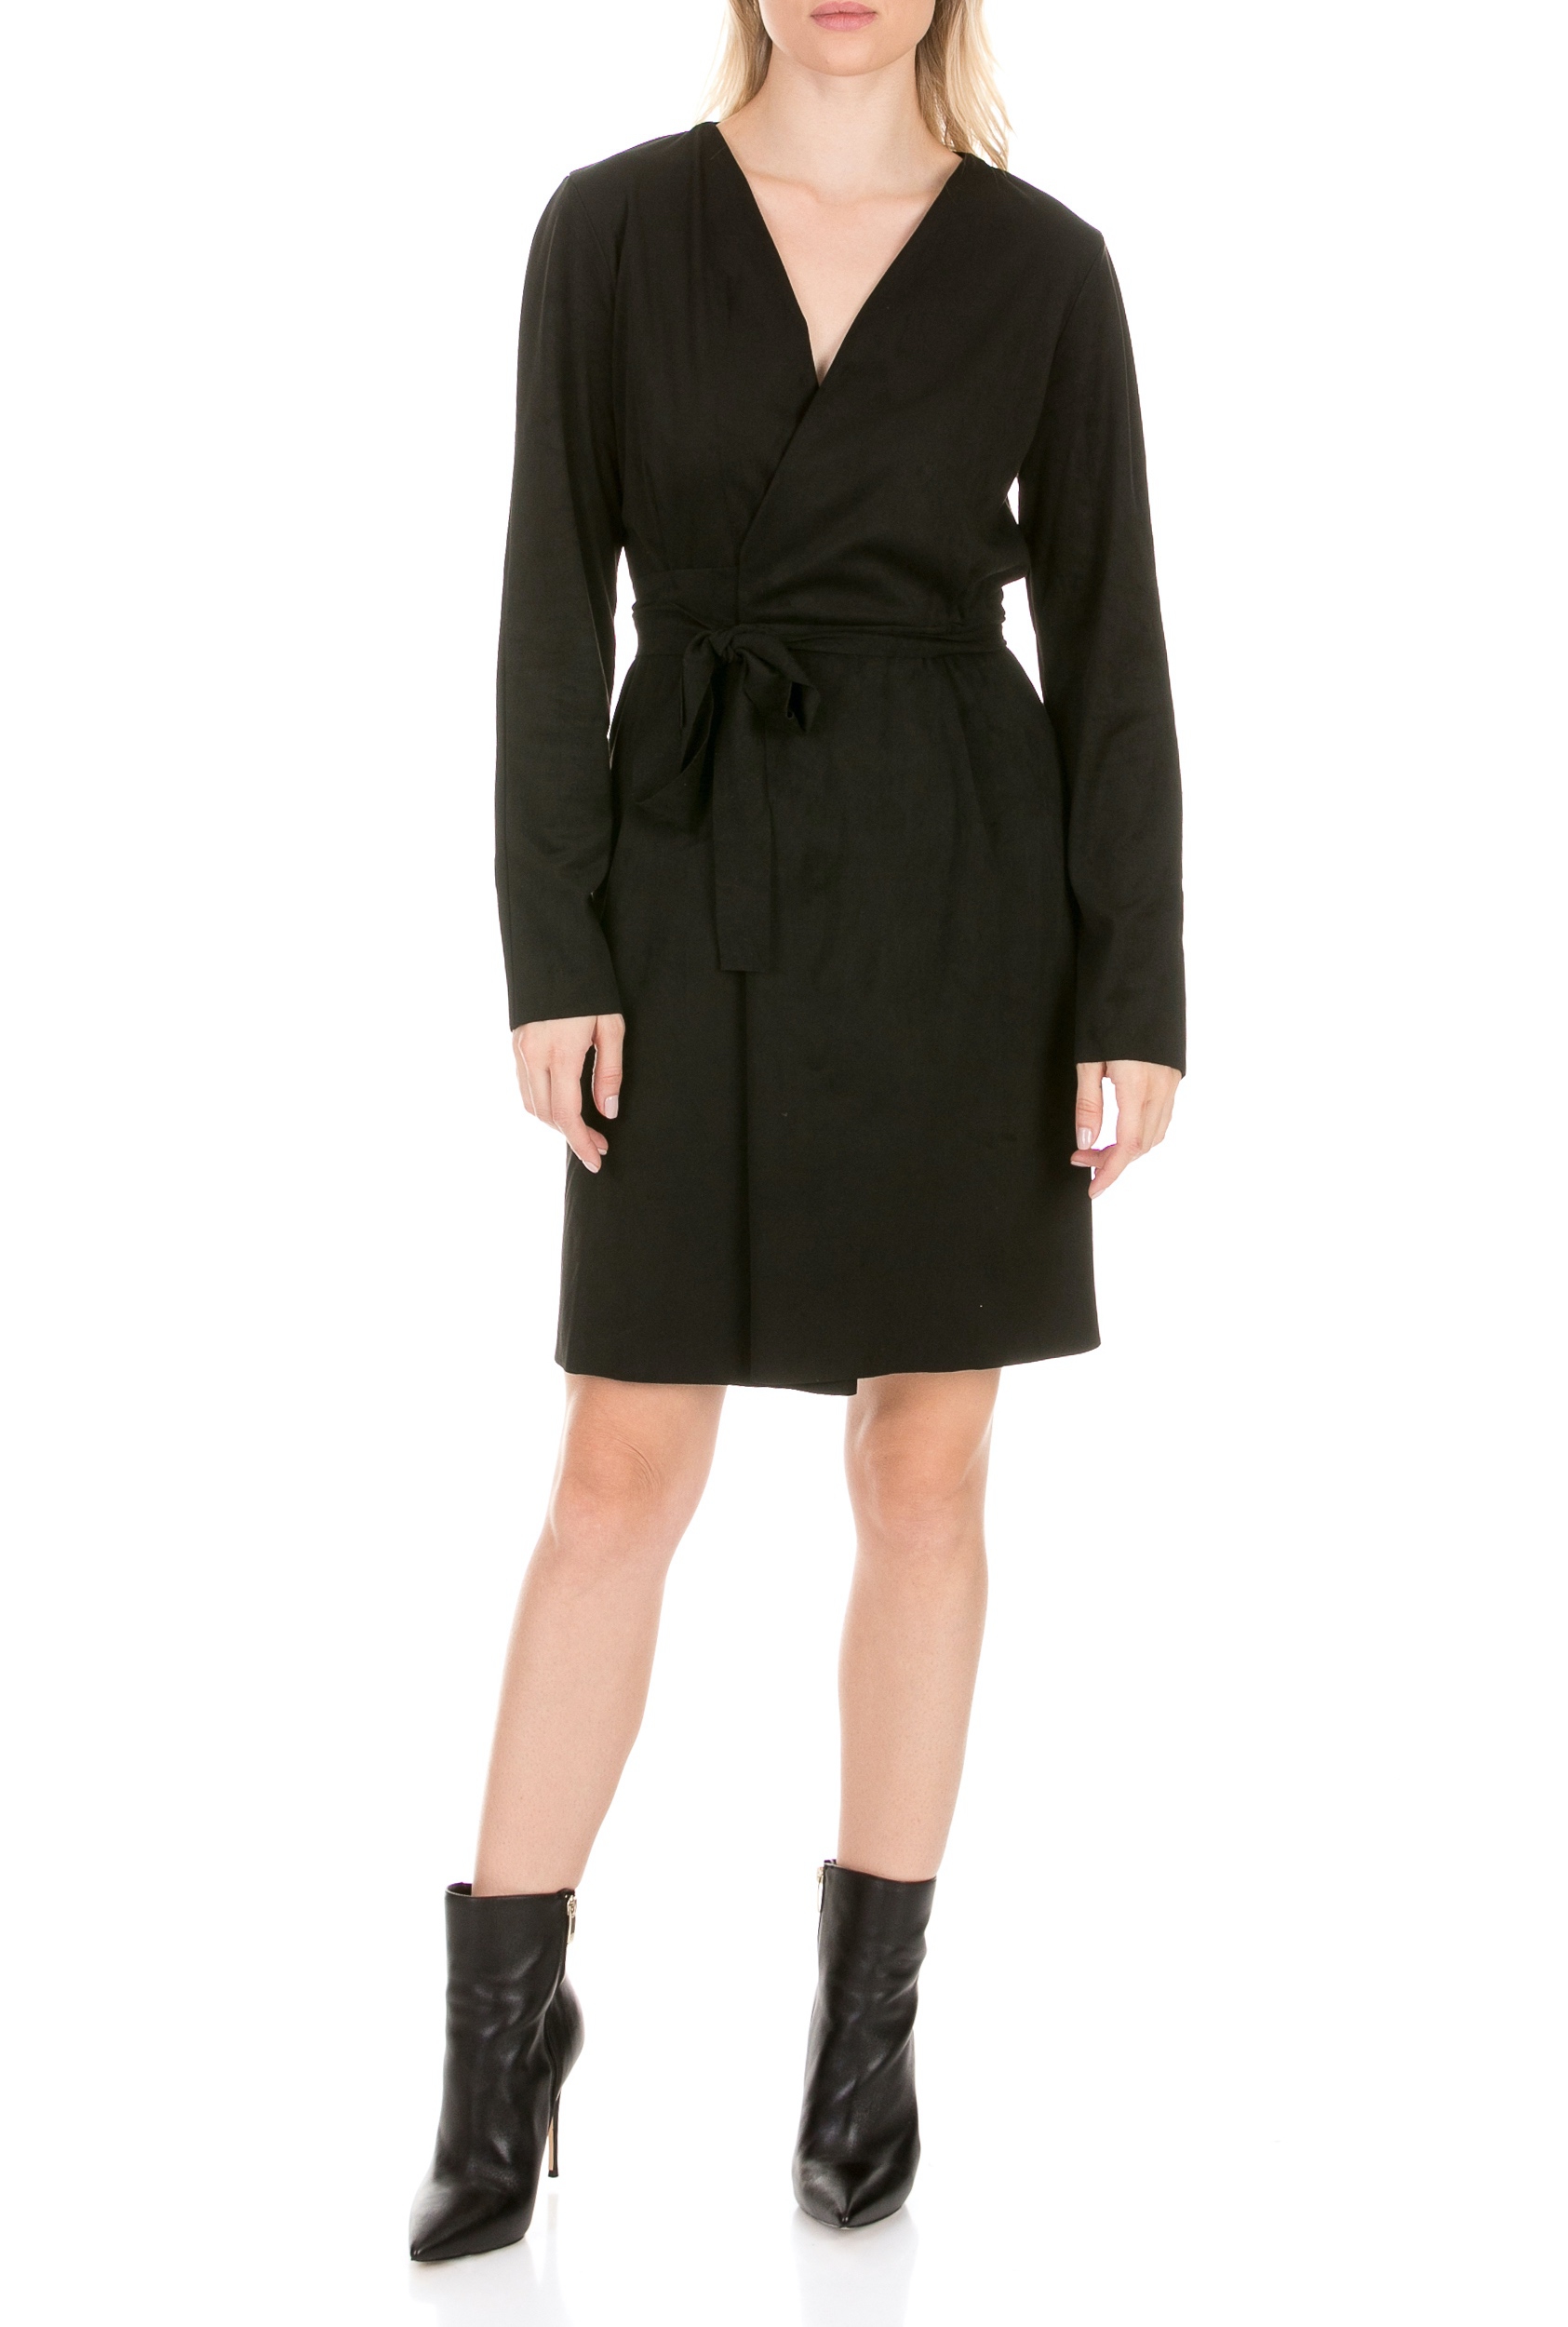 LA DOLLS – Γυναικείο φόρεμα LA DOLLS SKIN DRESS μαύρο